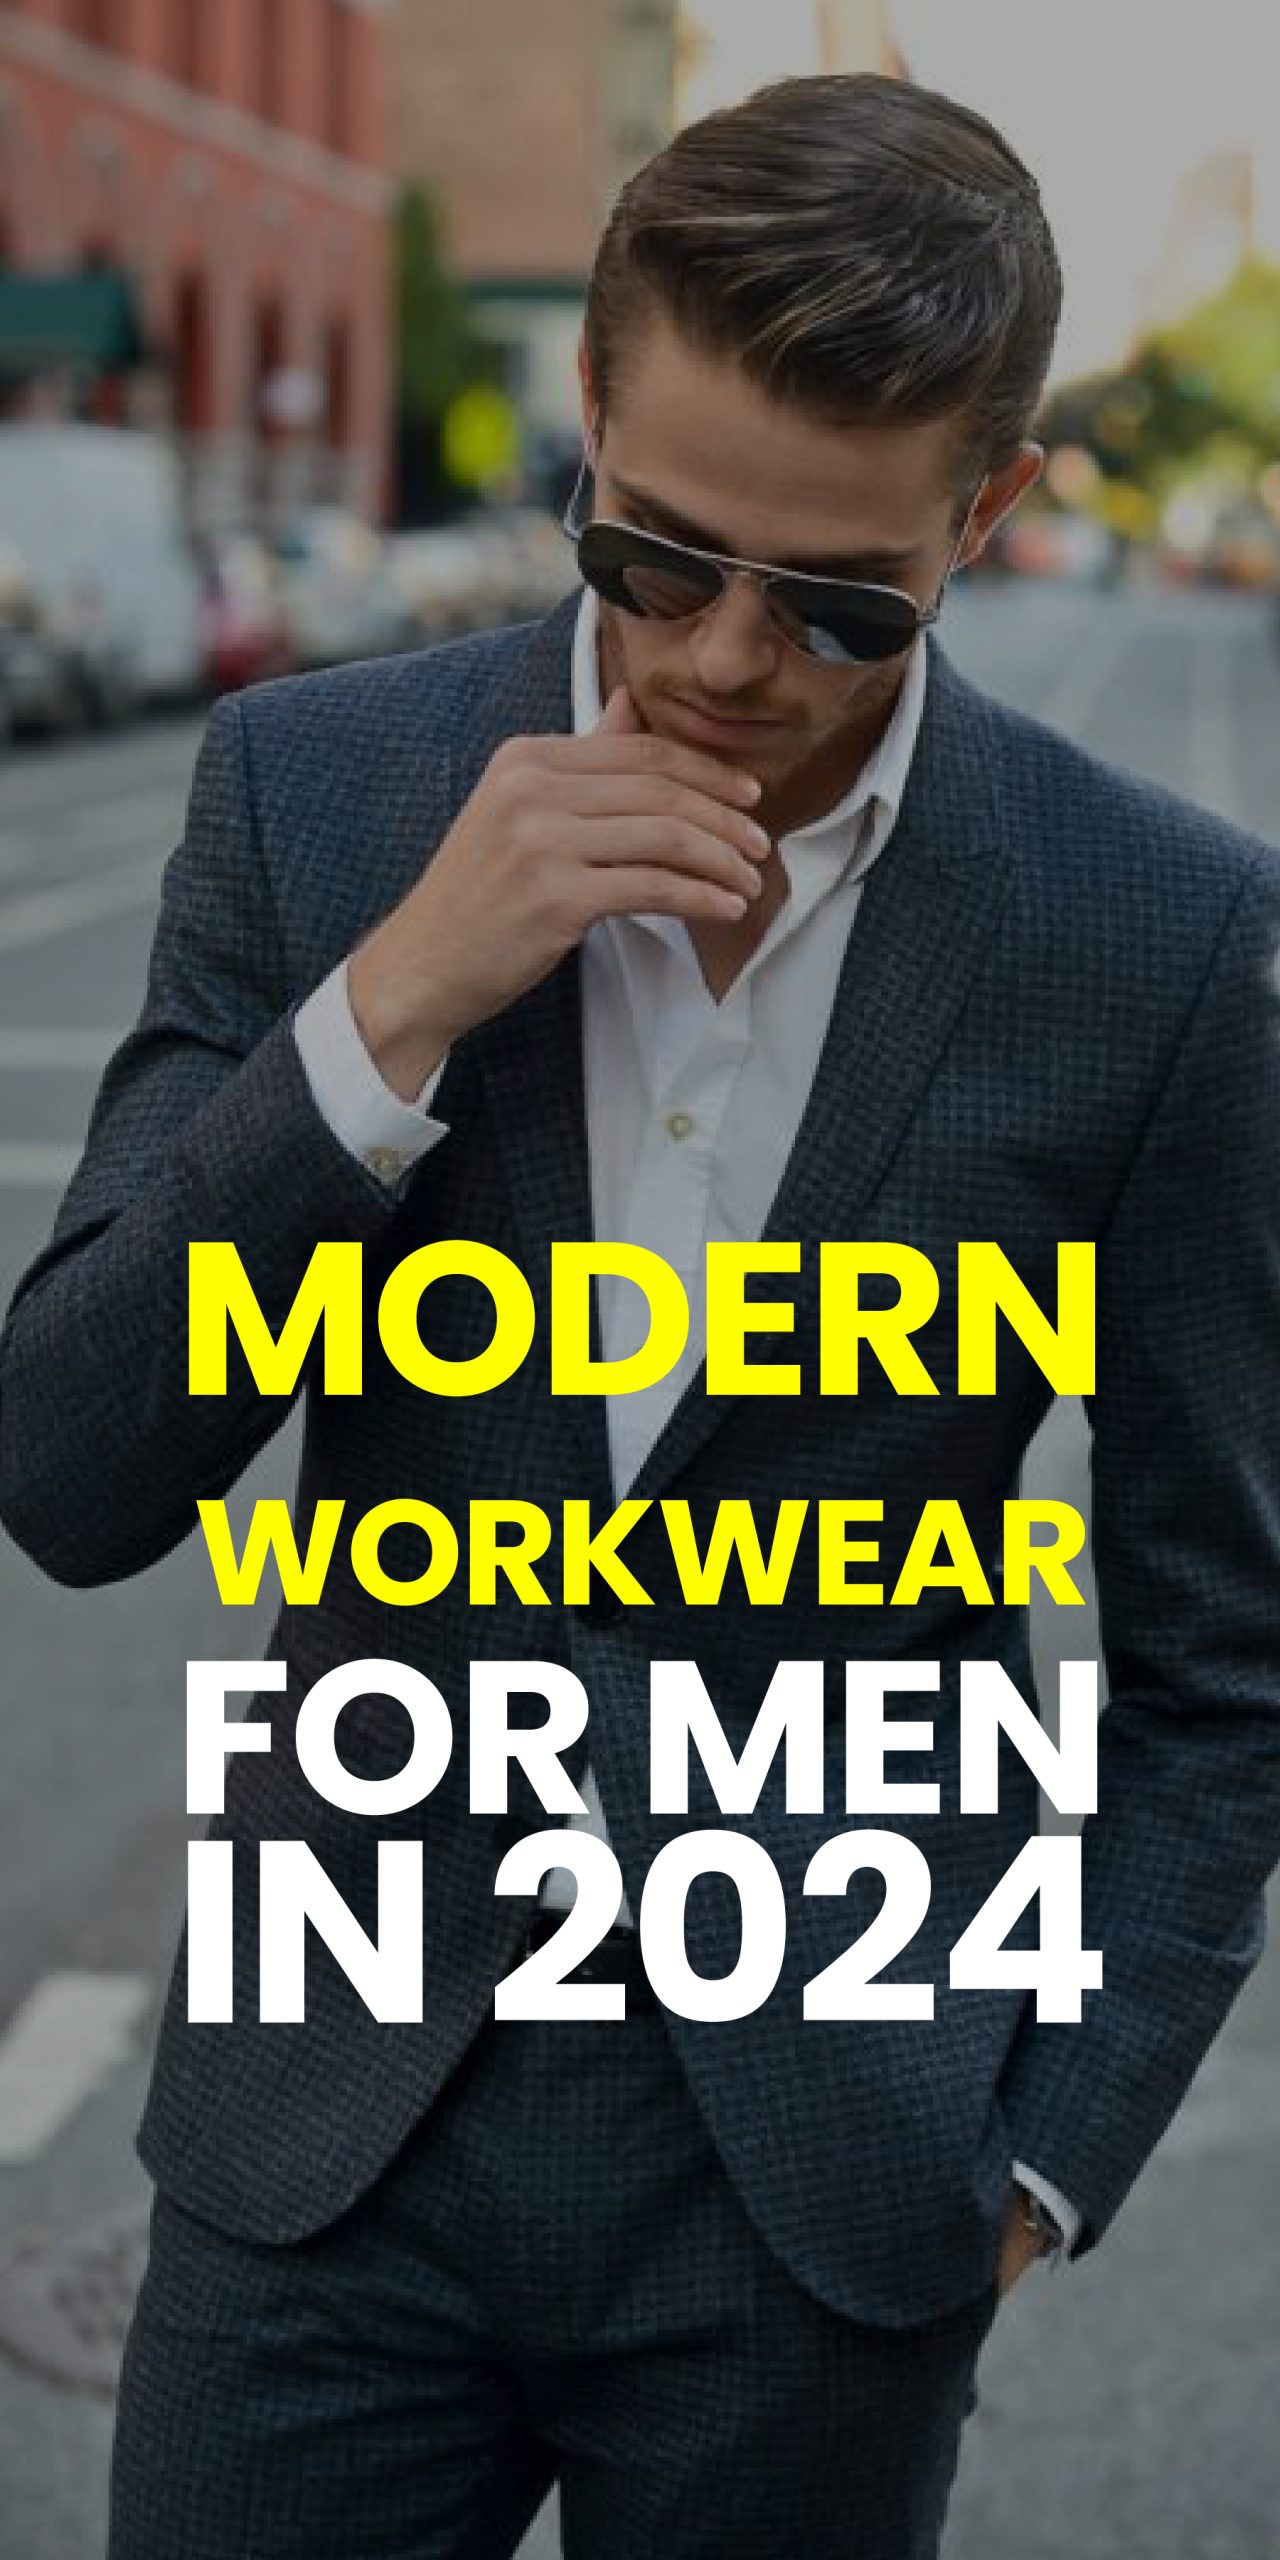 MODERN WORKWEAR FOR MEN IN 2024